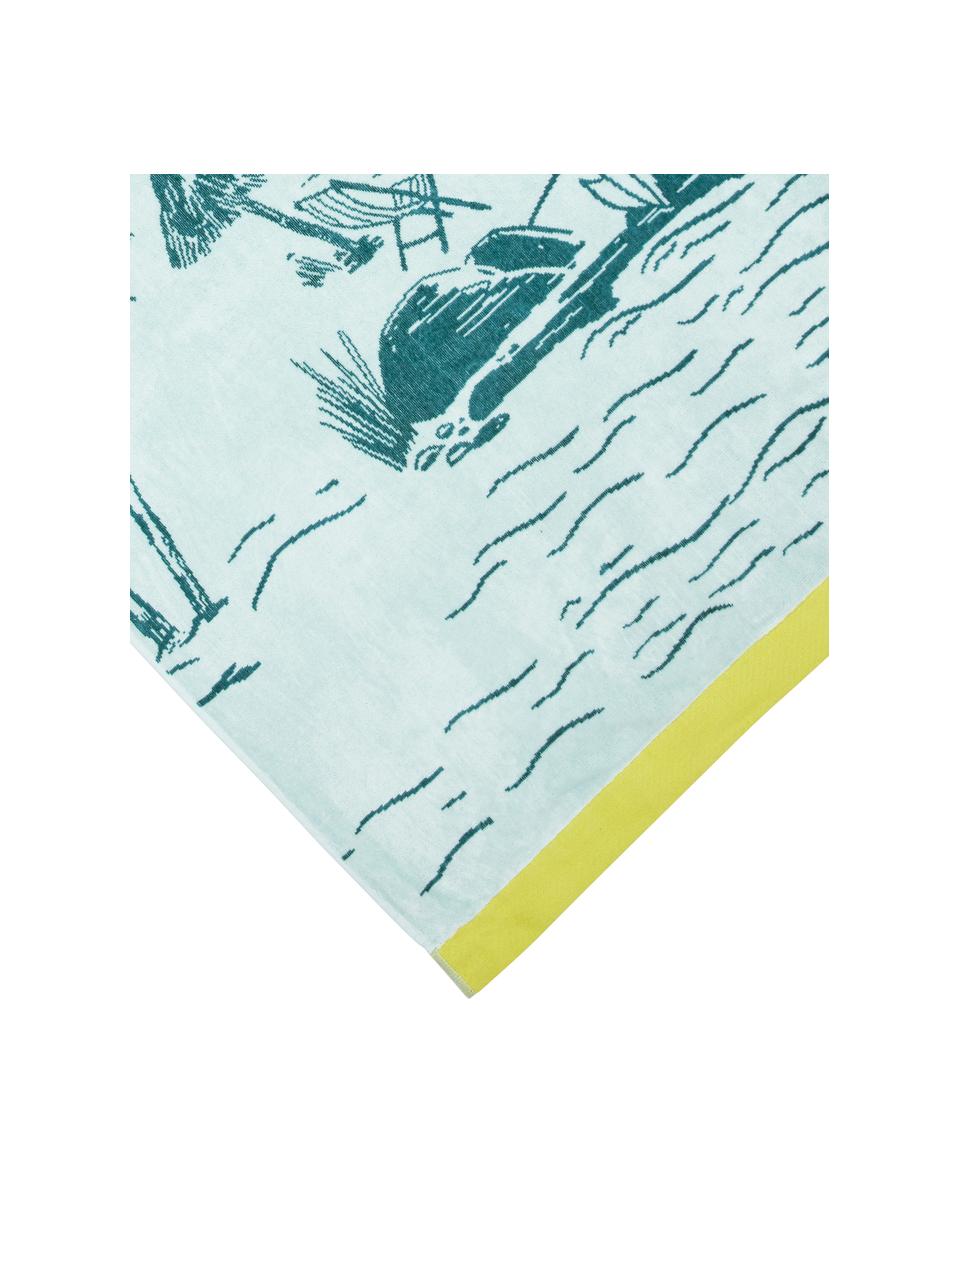 Strandtuch Oceano aus Baumwolle, 100 % Baumwolle, Gelb, Blautöne, B 100 x L 180 cm